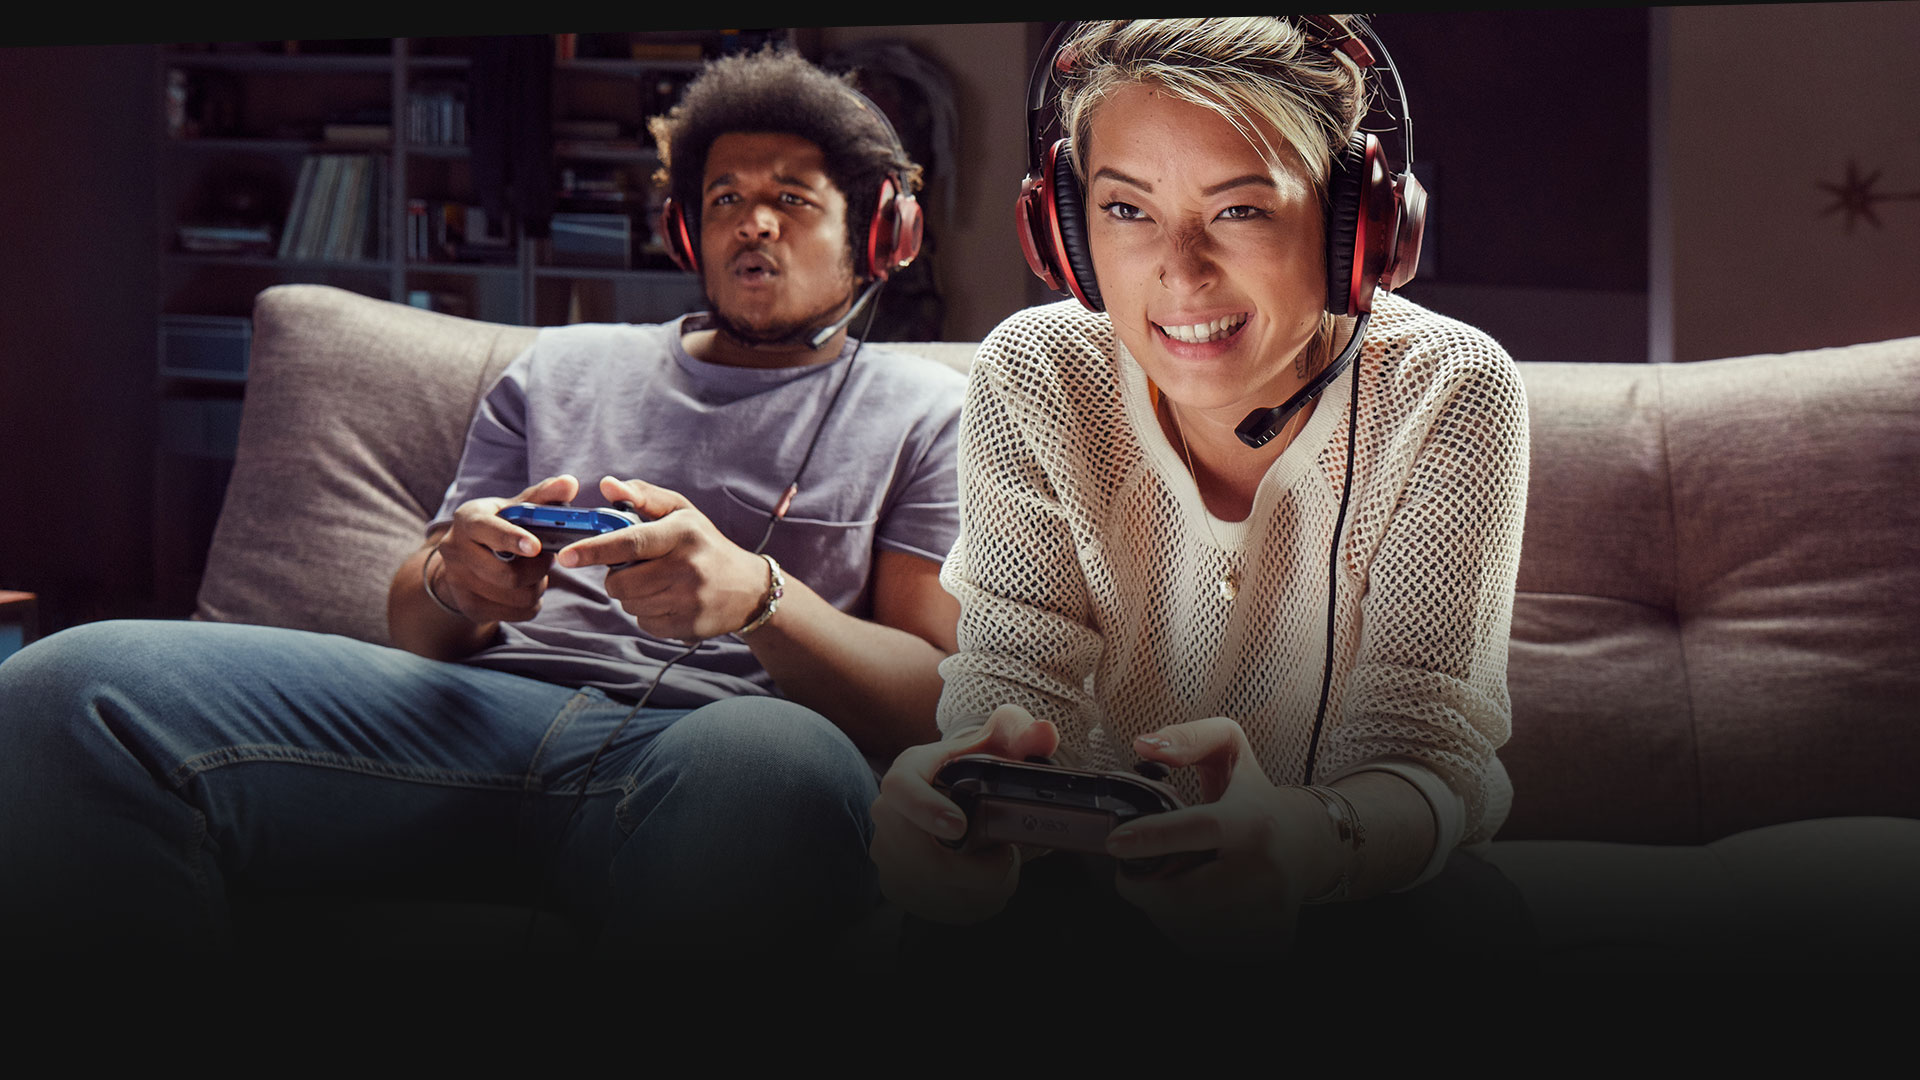 Duas pessoas usando fones de ouvido jogando no Xbox One em um sofá